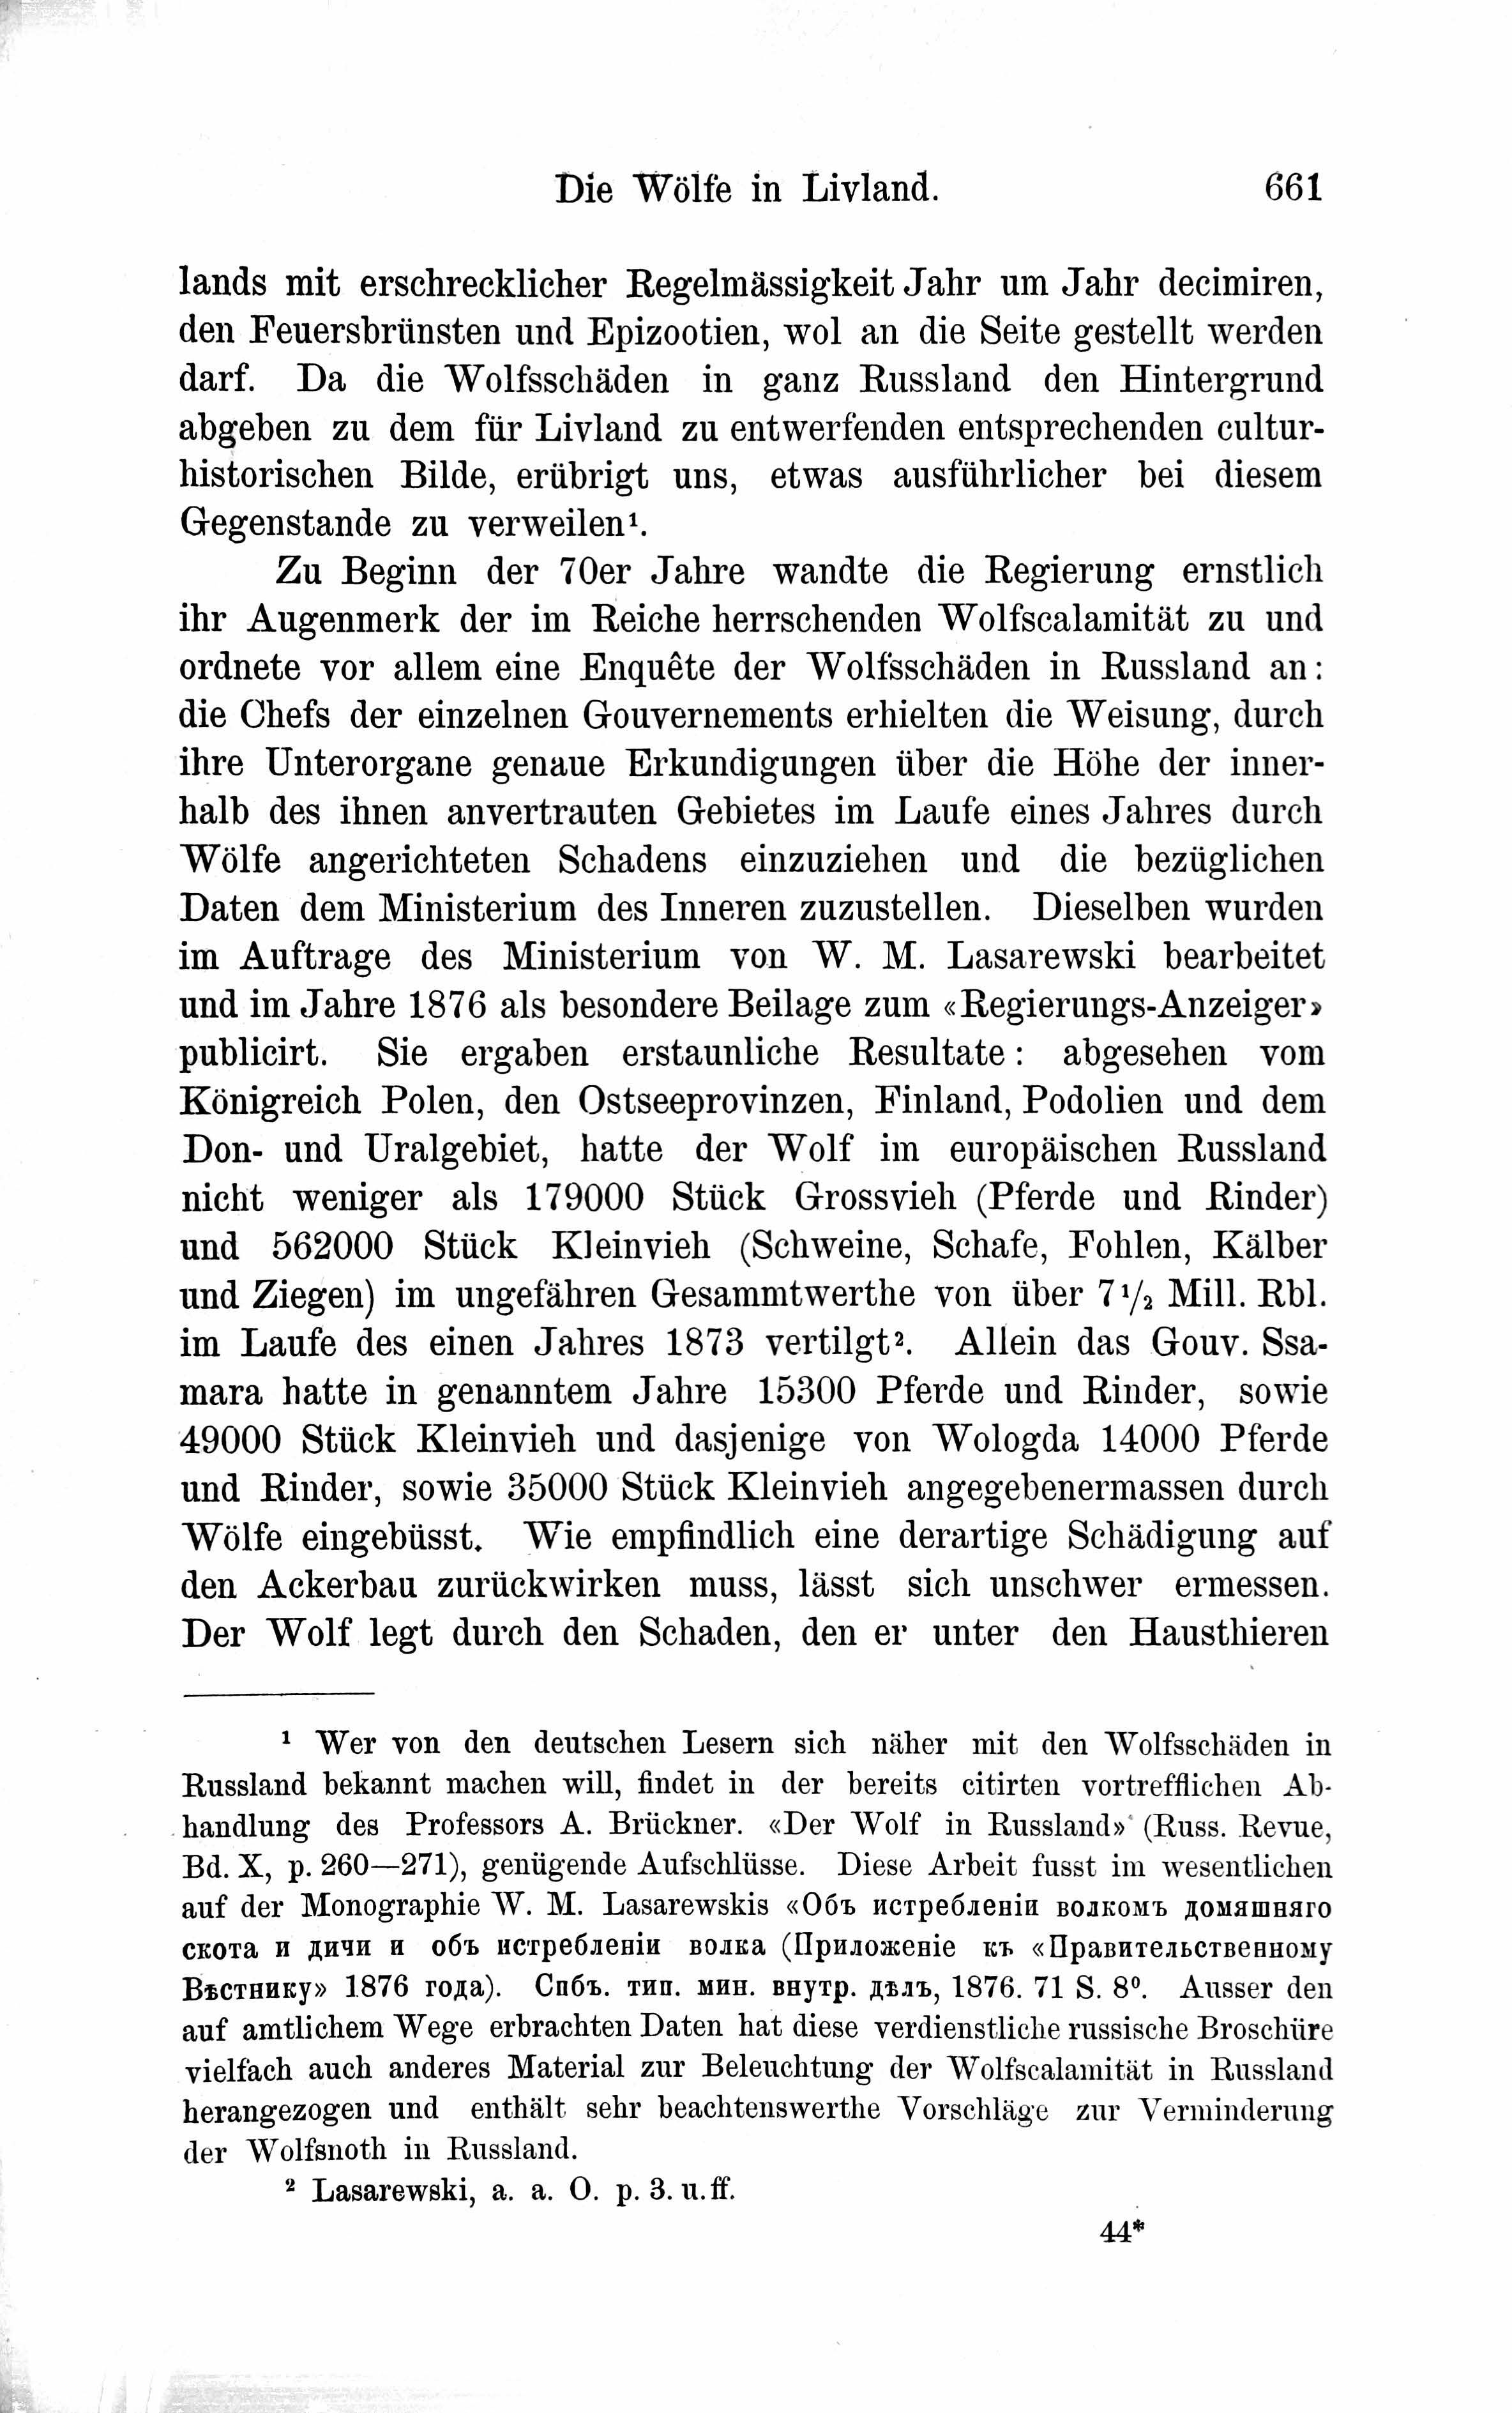 Die Wölfe in Livland (1882) | 3. Haupttext